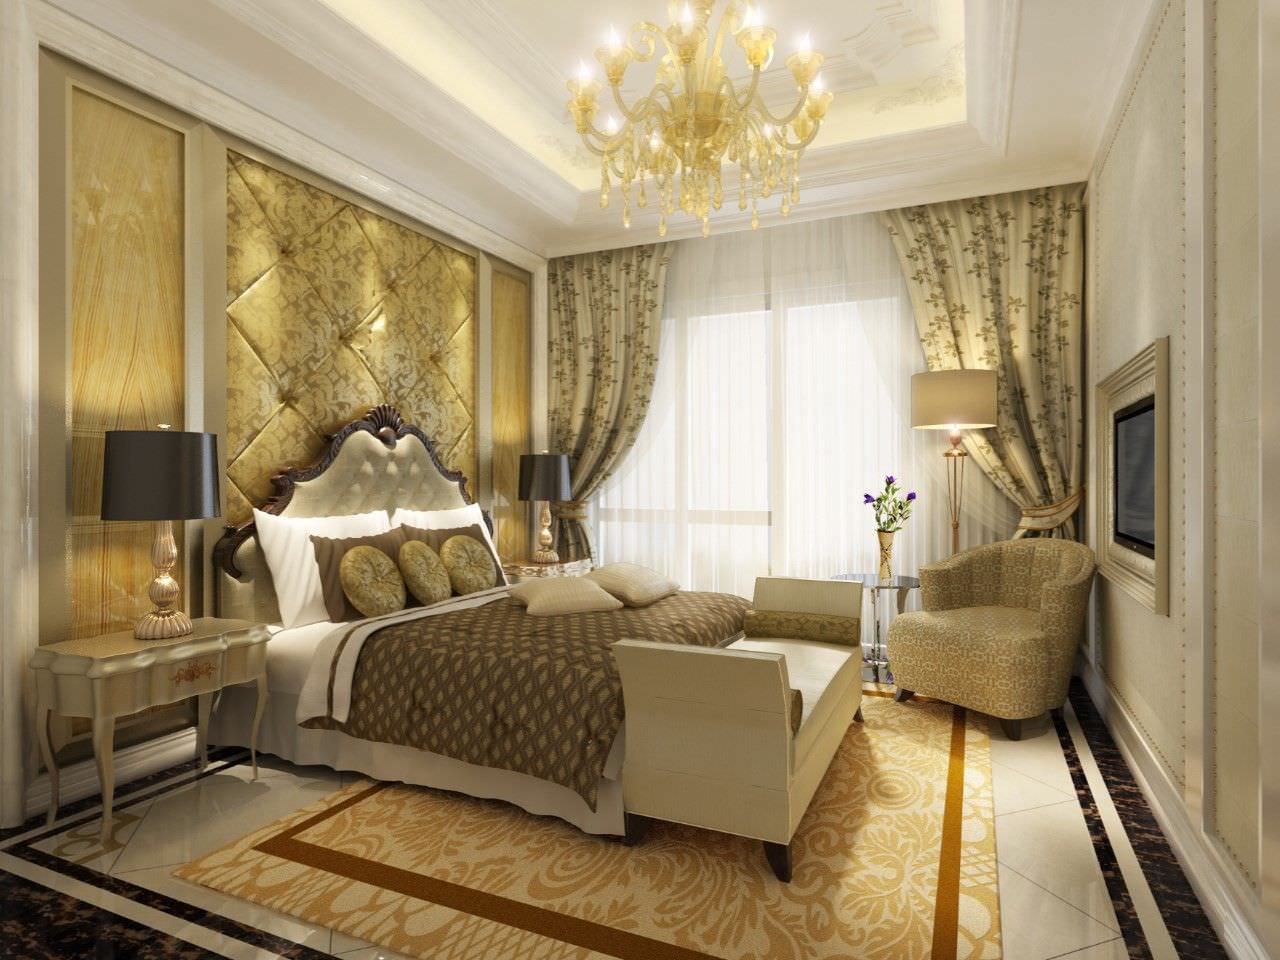 Thiết kế phòng ngủ màu vàng nâu theo phong cách tân cổ điển ấm áp